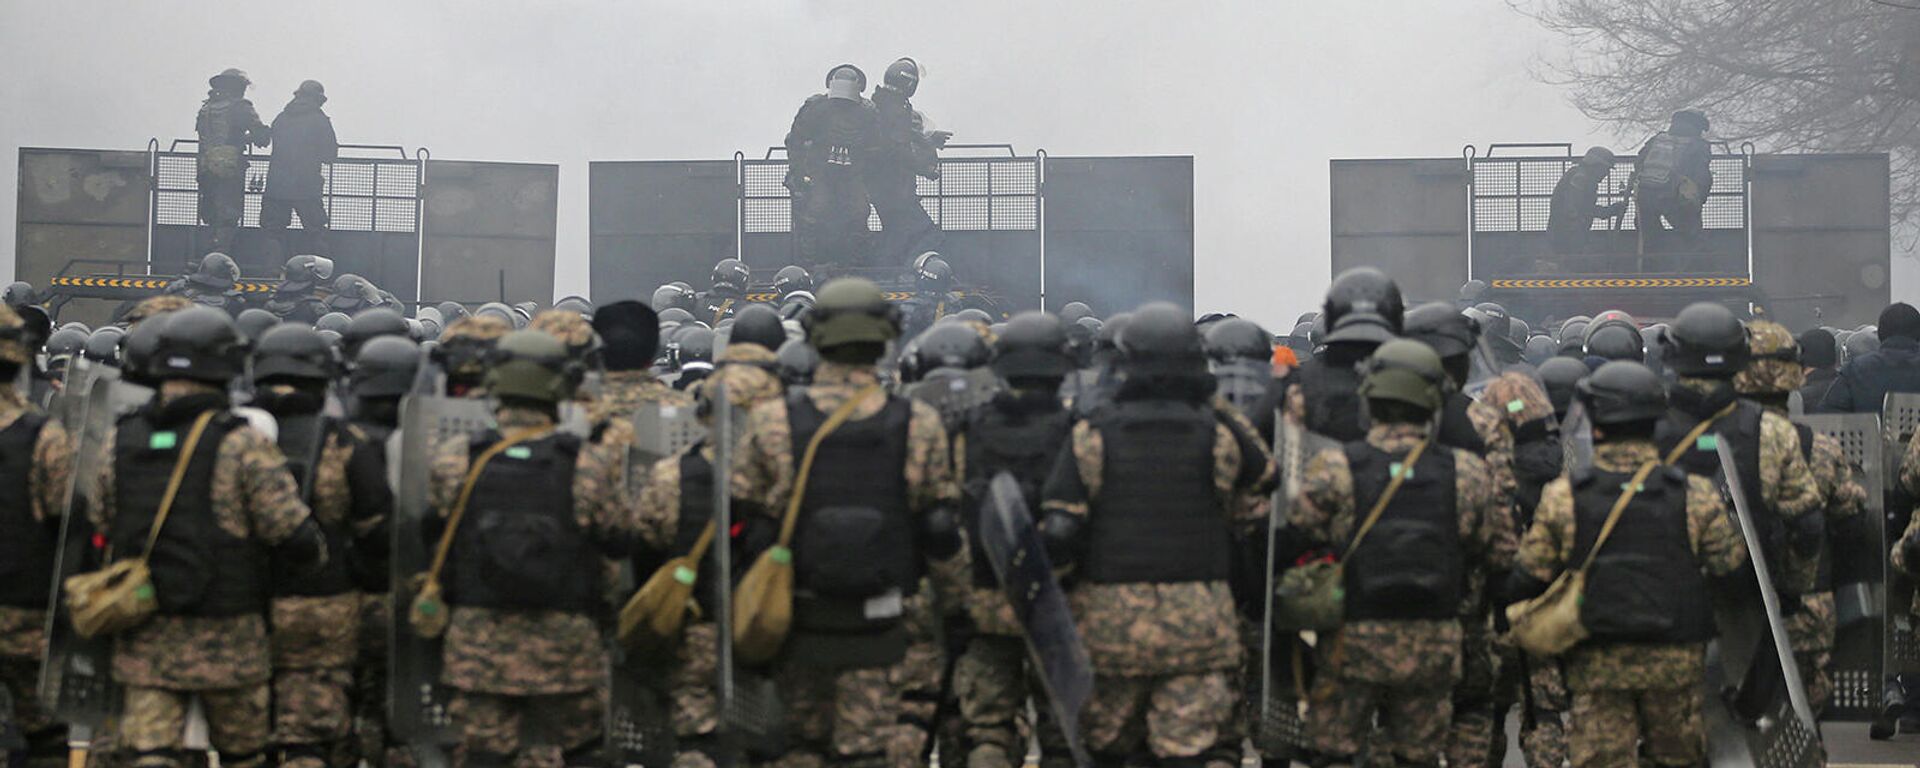 Органы правопорядка во время акции протеста в Алматы (5 января 2022). Казахстан - Sputnik Армения, 1920, 06.01.2022